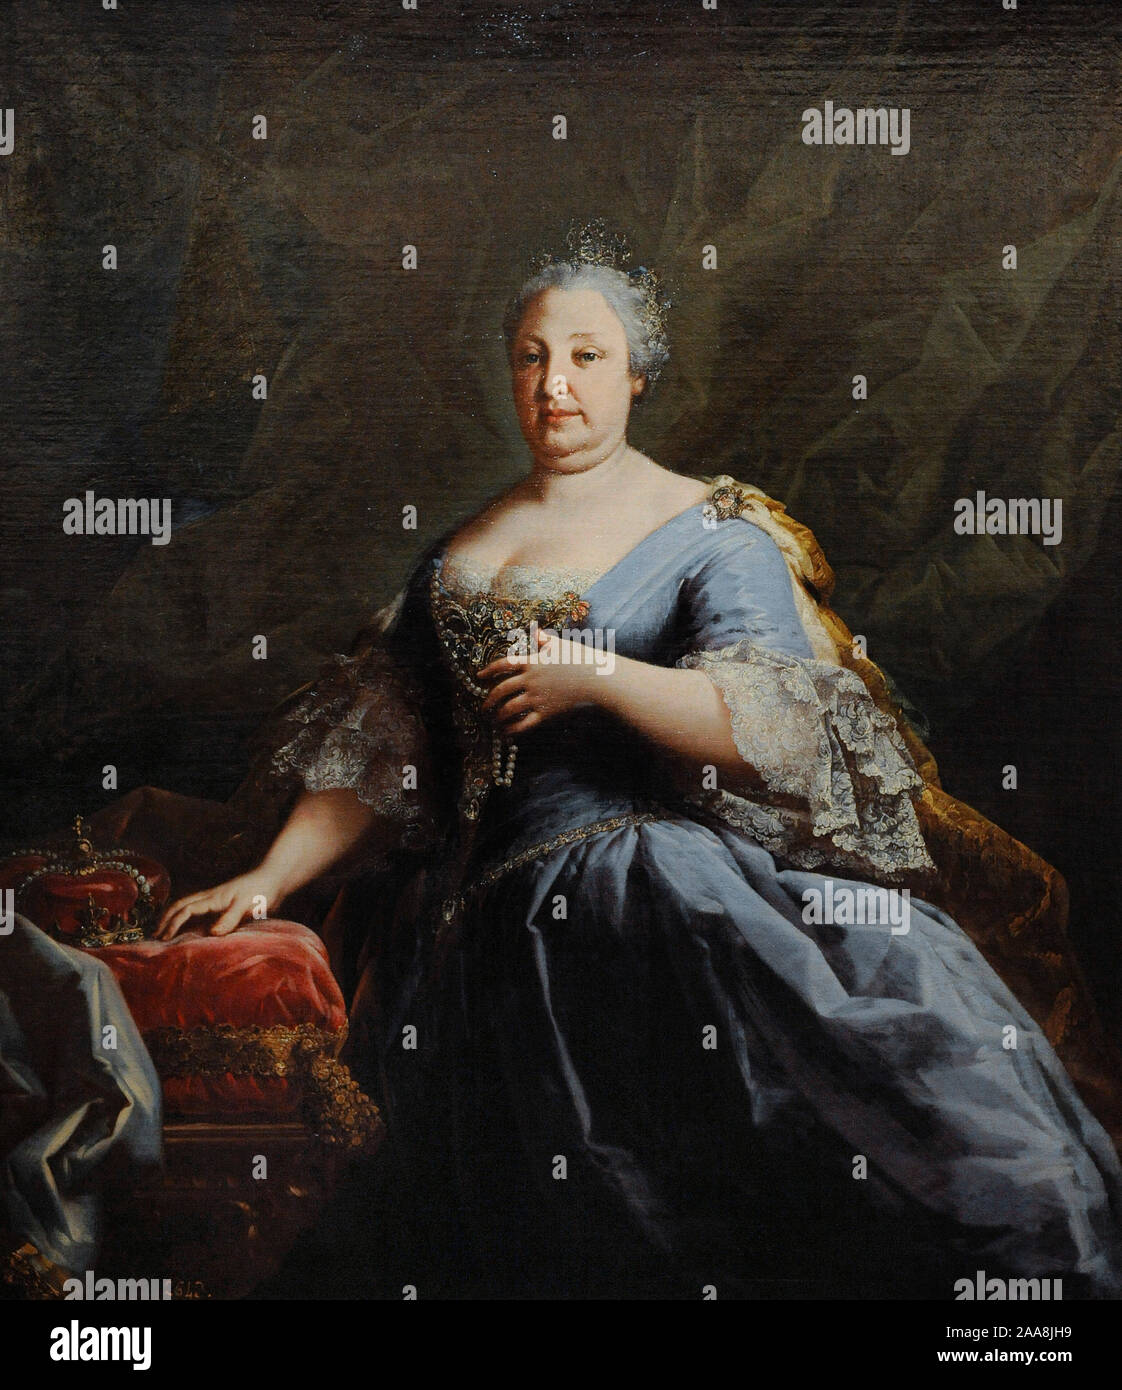 Barbara del Portogallo (1711-1758). La regina di Spagna. Anonimo ritratto. Metà del XVIII secolo. Museo di storia. Madrid. Spagna. (In prestito e al Museo del Prado di Madrid). Foto Stock